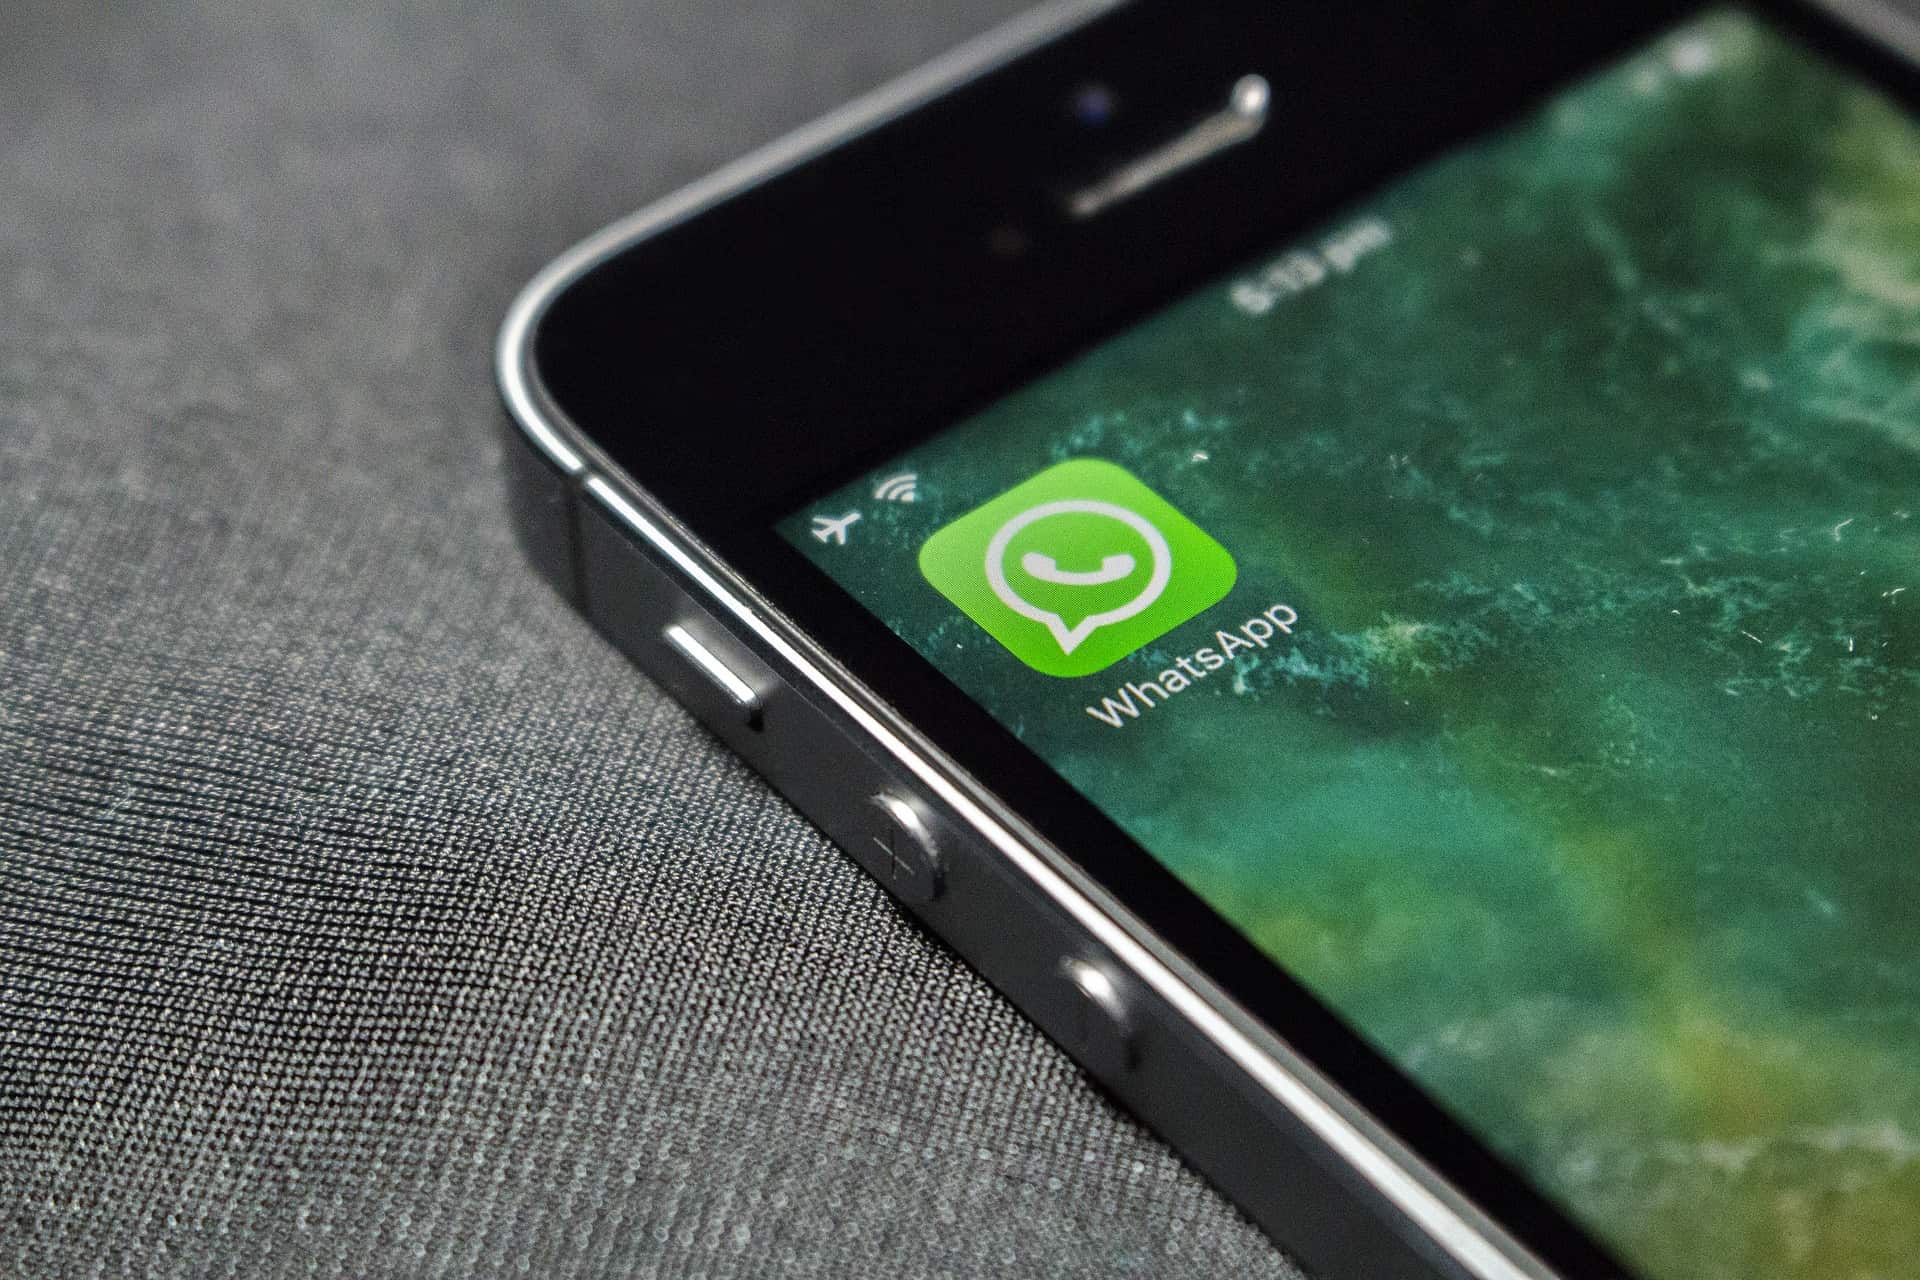 Sprach- und Videoanrufe über WhatsApp